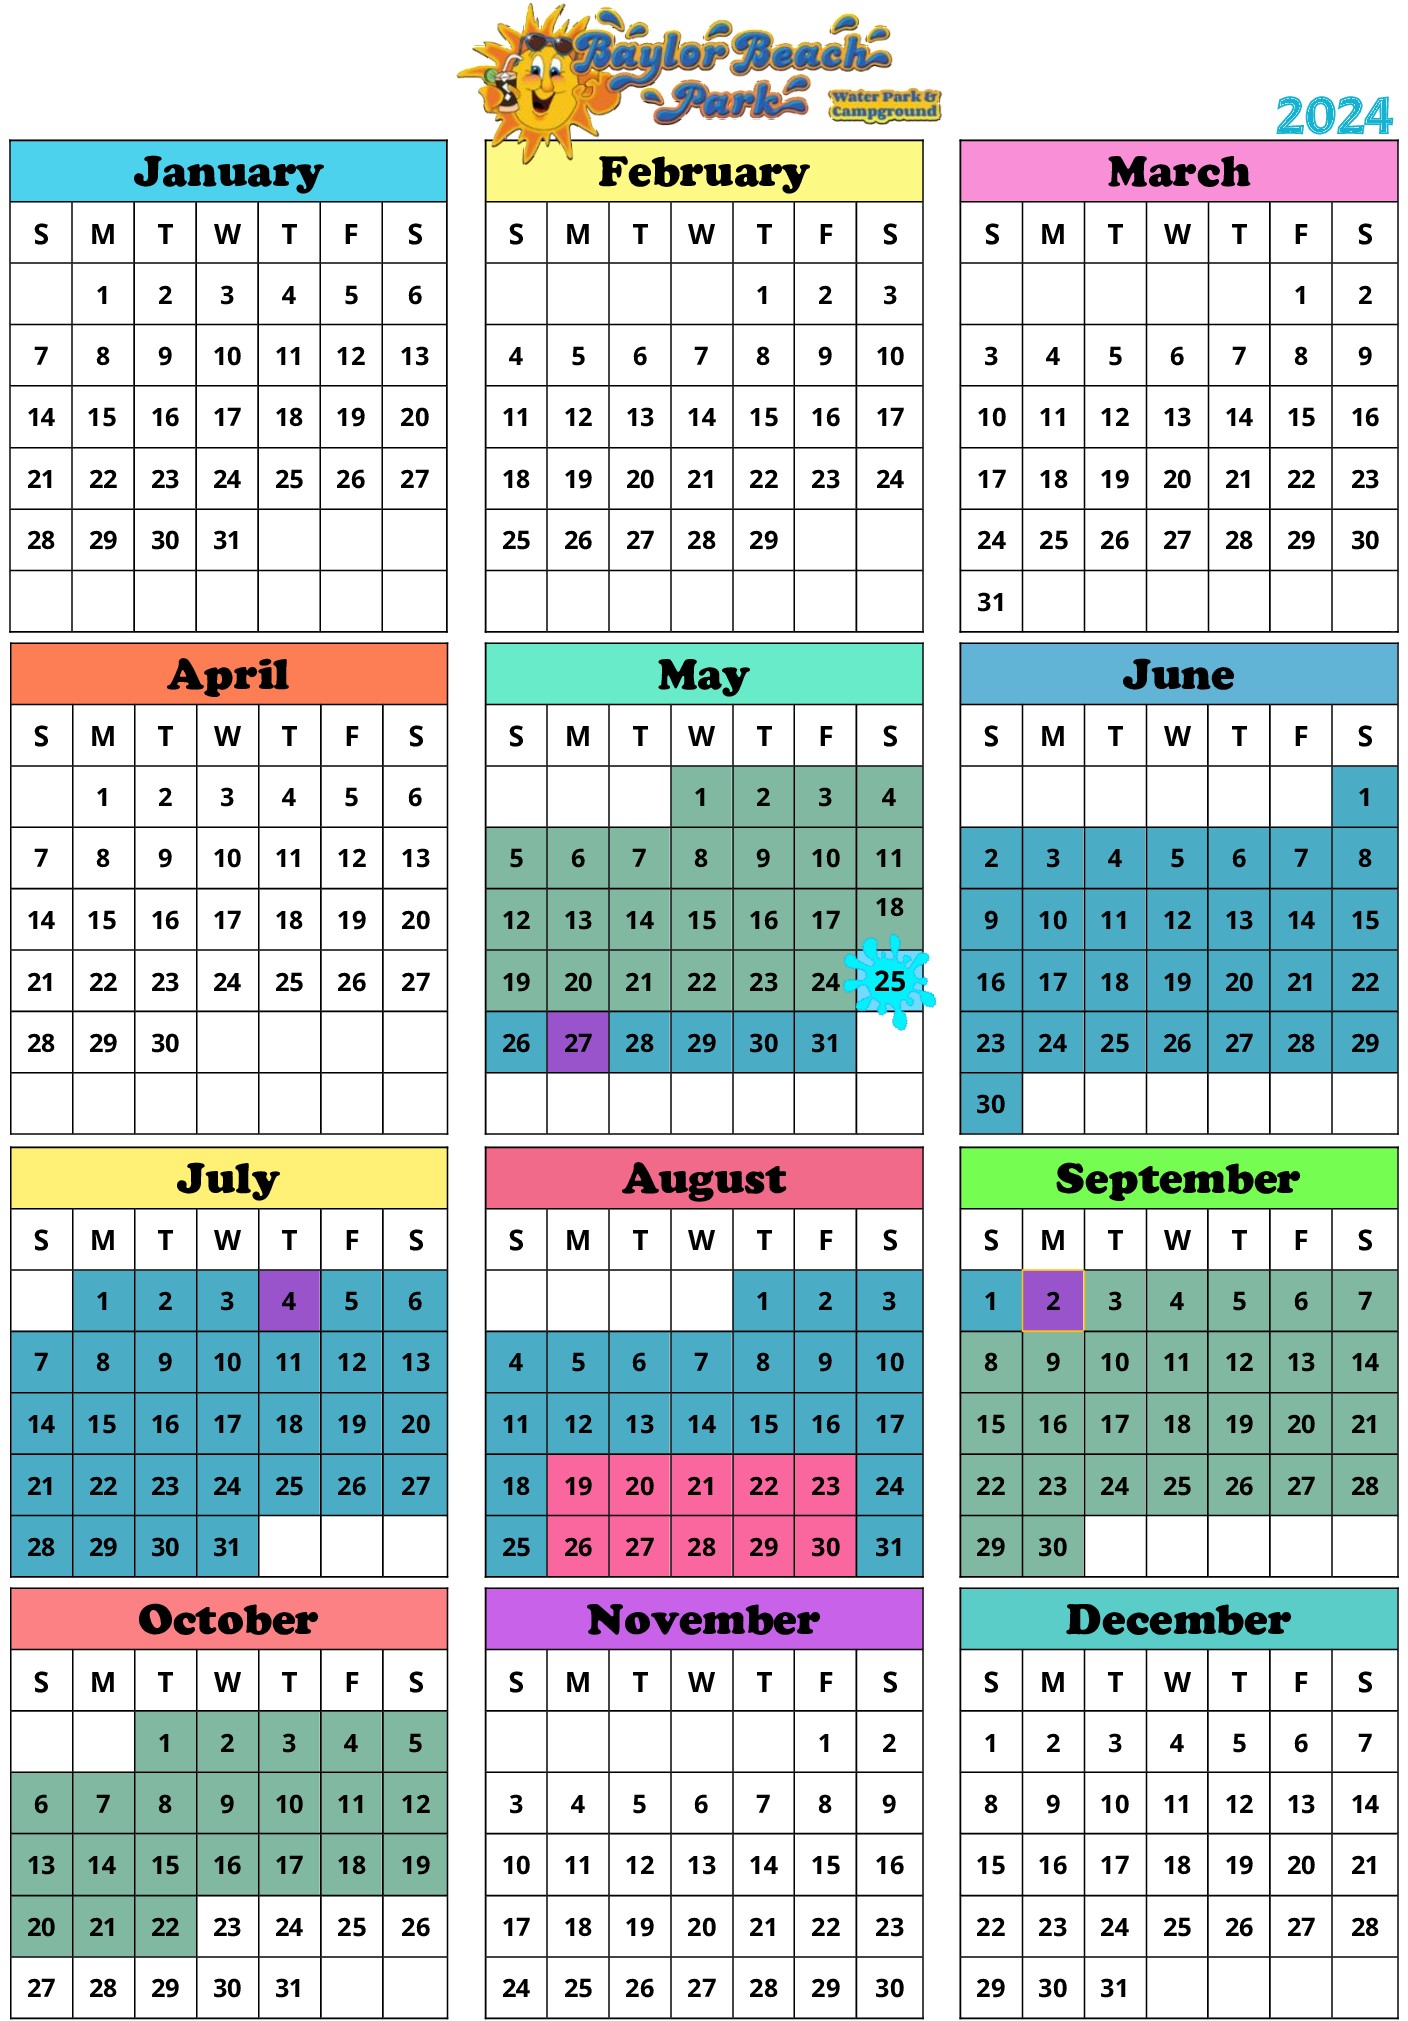 Baylor Beach Park Calendar